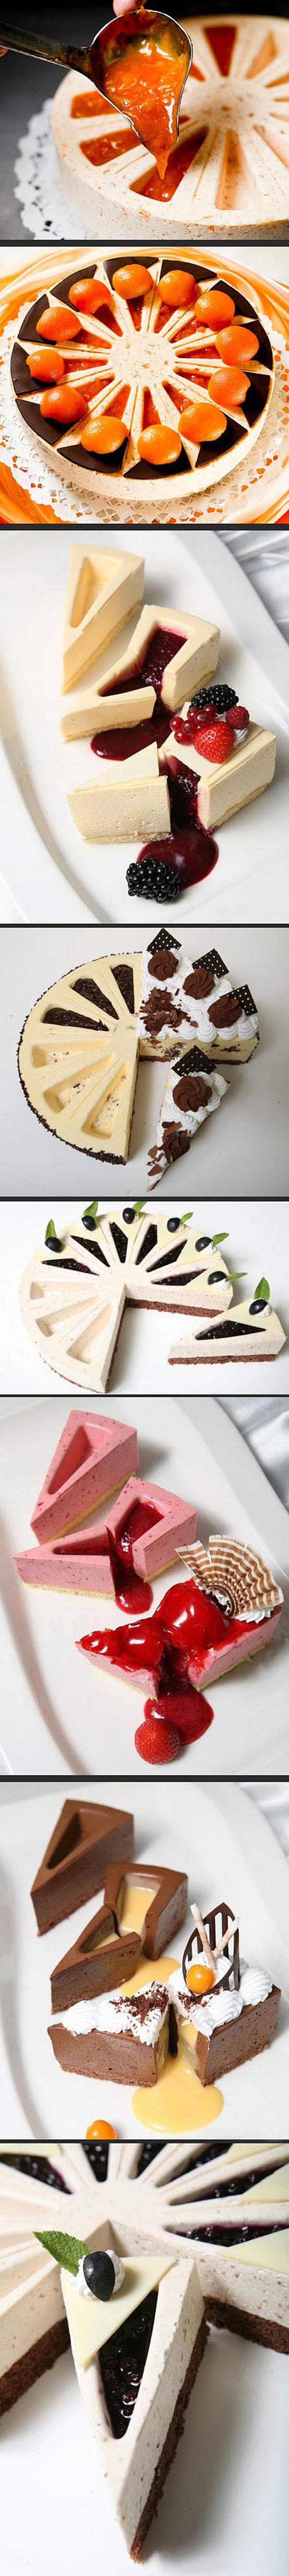 Savršene torte koje bi svaki ljubitelj slatkog htio kušati iste sekunde